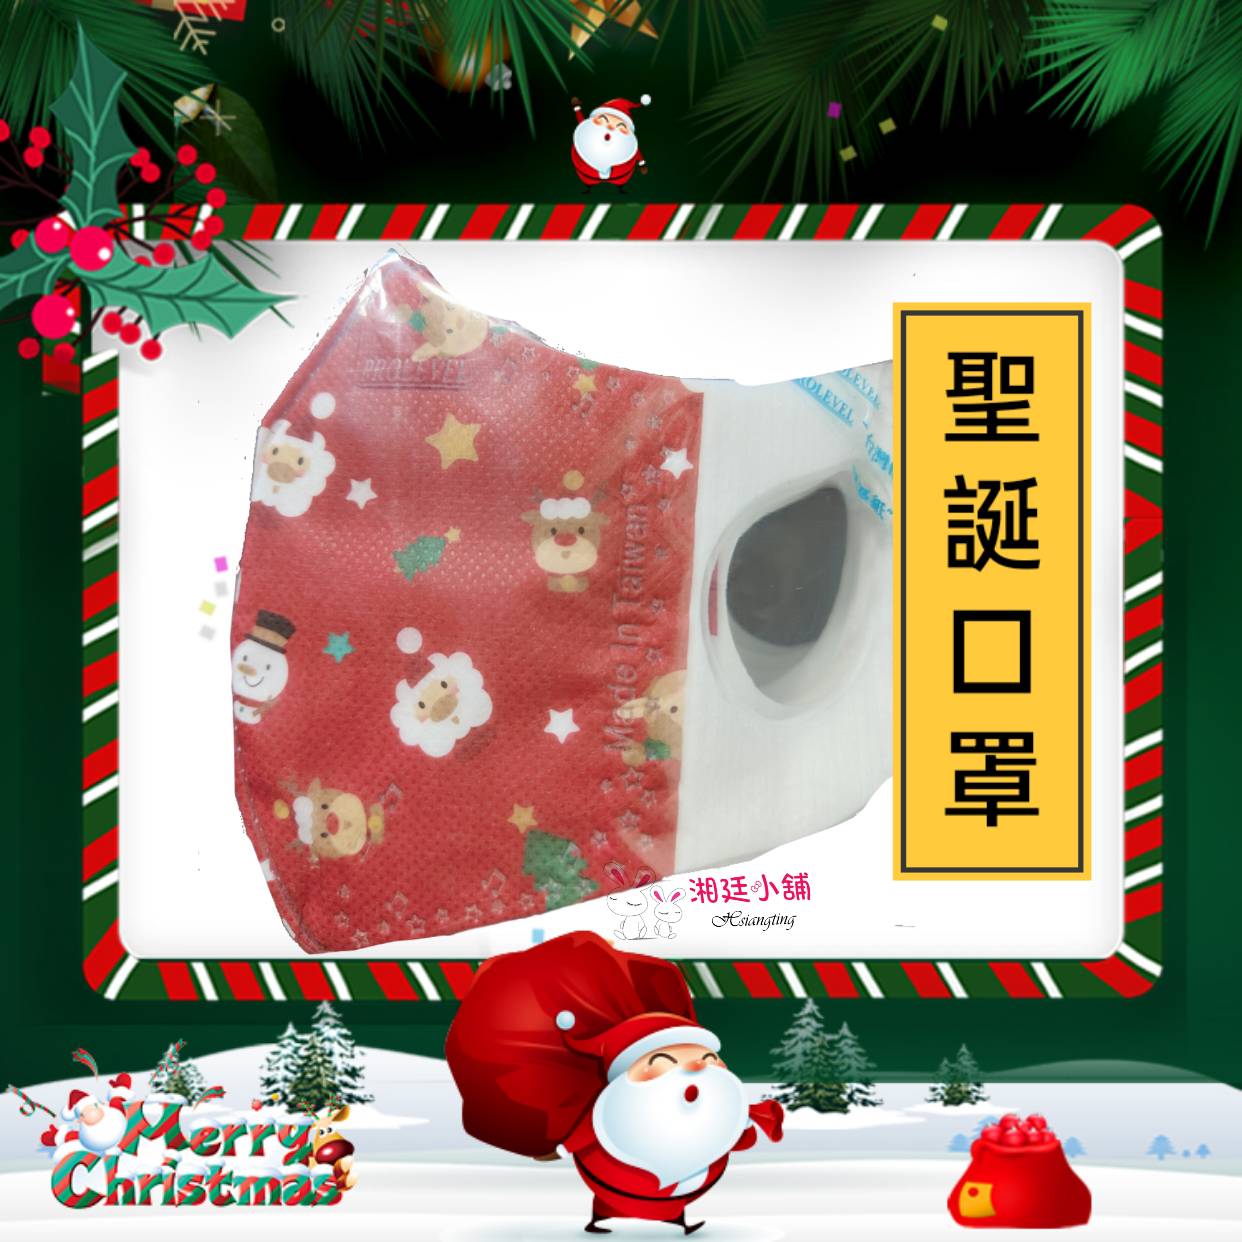 立體聖誕口罩 台灣優紙~兒童3D醫療口罩(一盒30入) 口罩 優紙口罩 優紙立體 聖誕口罩